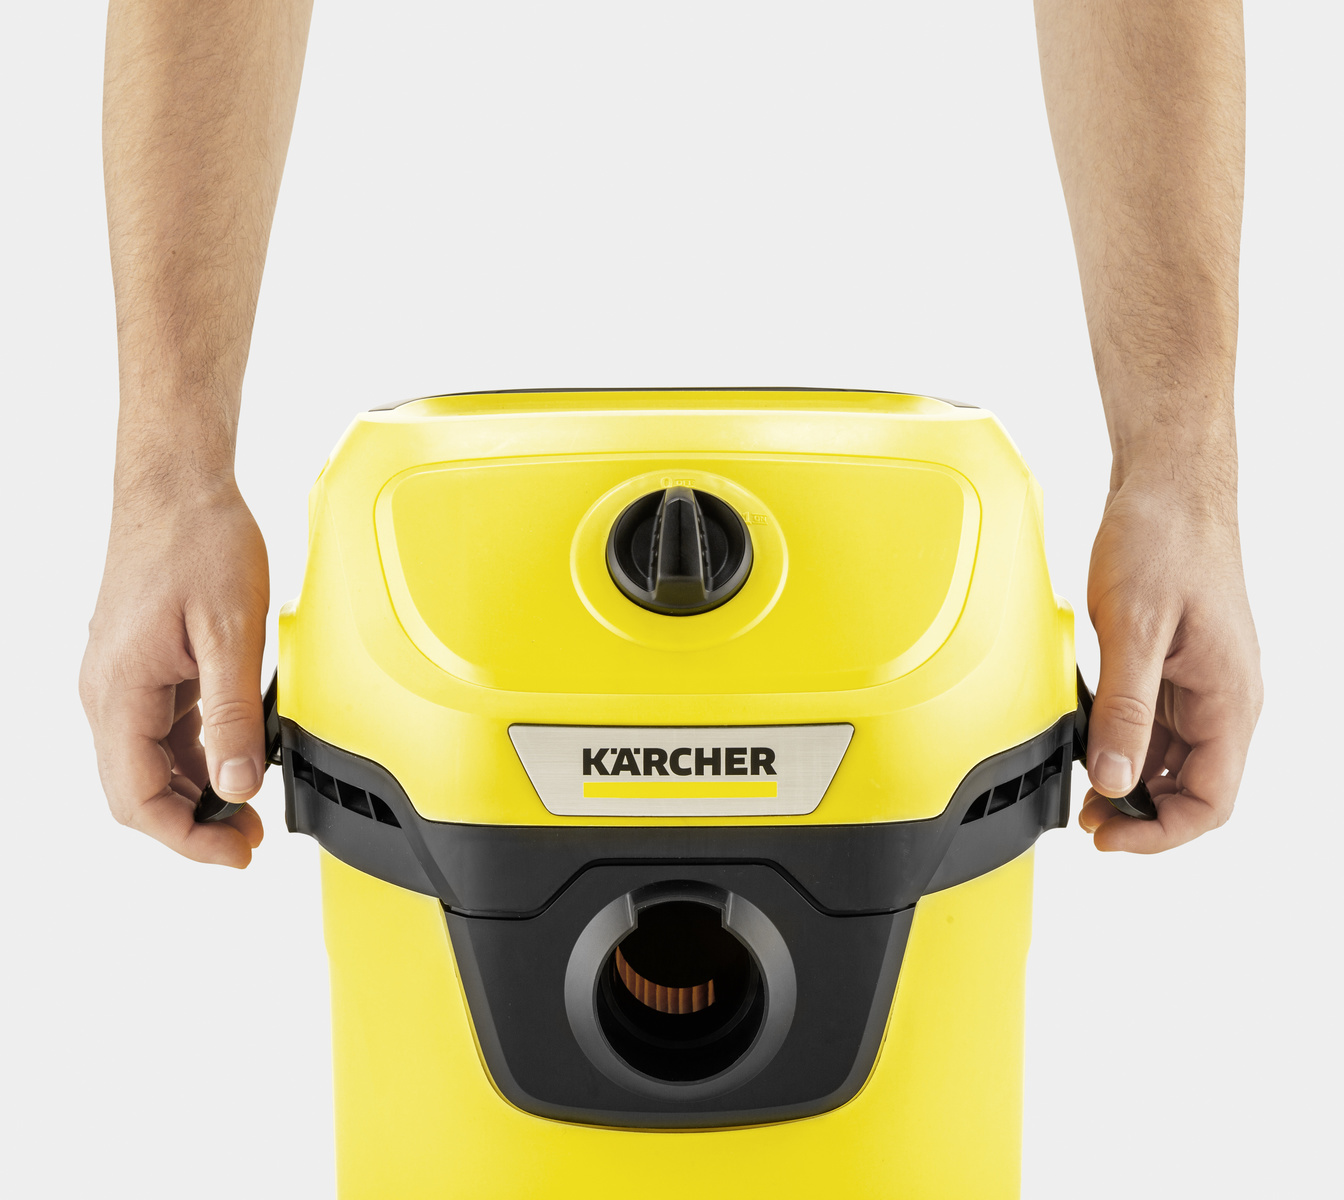  Kärcher WD 3 - Aspiradora multiusos para tienda en seco y  húmedo, 4.5 galones, con accesorios, función de soplador, diseño compacto  que ahorra espacio, 1000 W, color amarillo : Hogar y Cocina